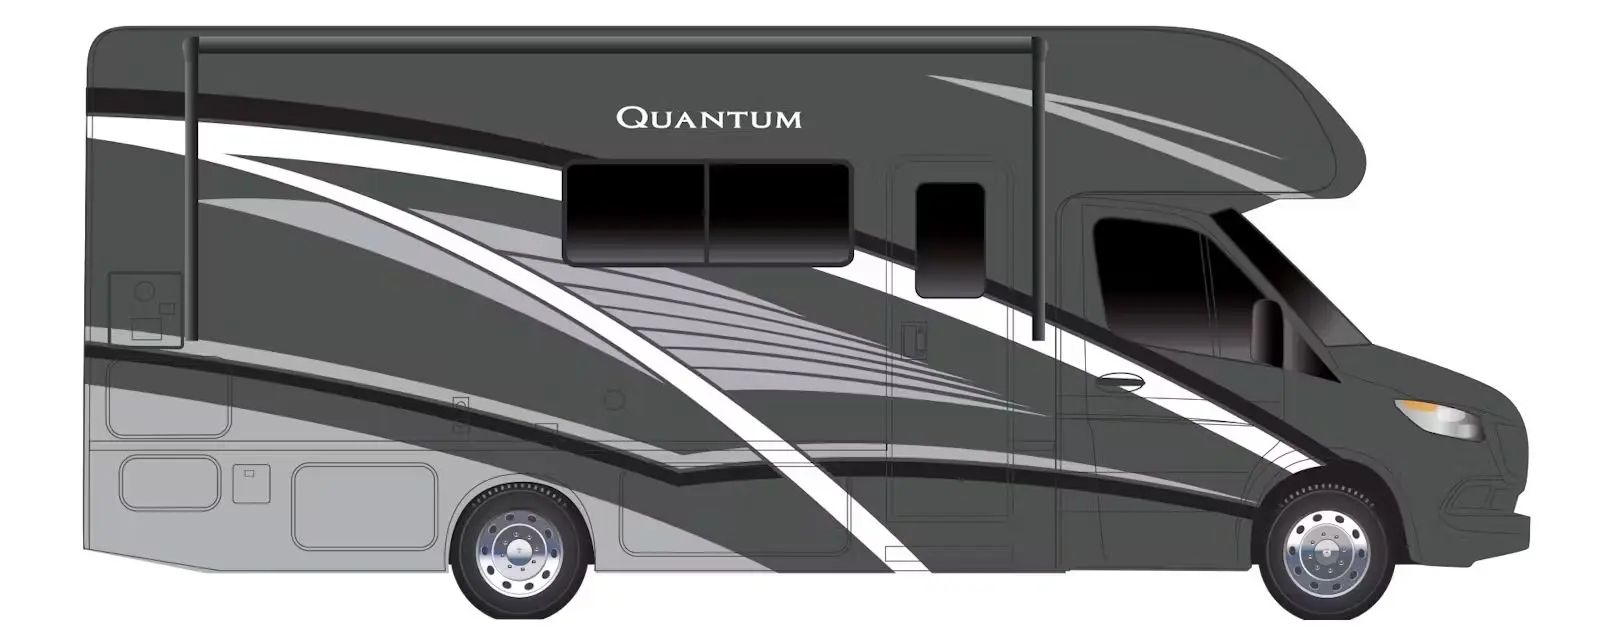 Quantum Sprinter Class C Motor Home